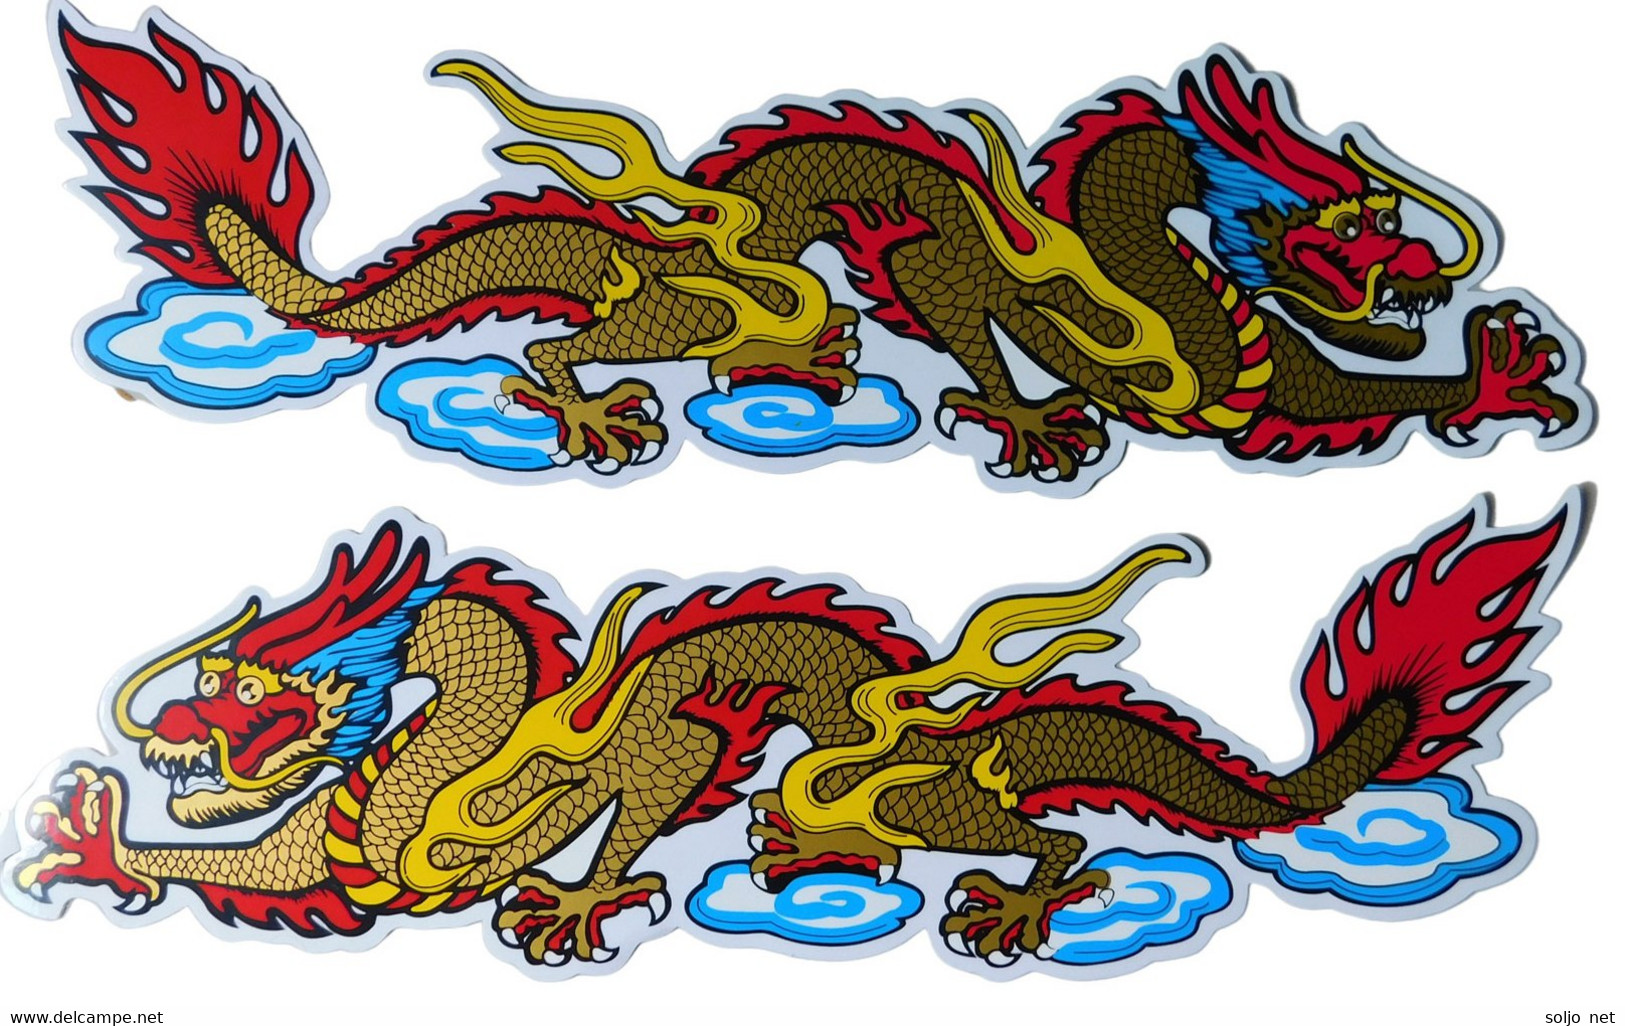 Drachen Schlange Tiere Aufkleber / Dragon Snake Animal Sticke2r X Bogen 35 X 11 Cm ST030 - Scrapbooking